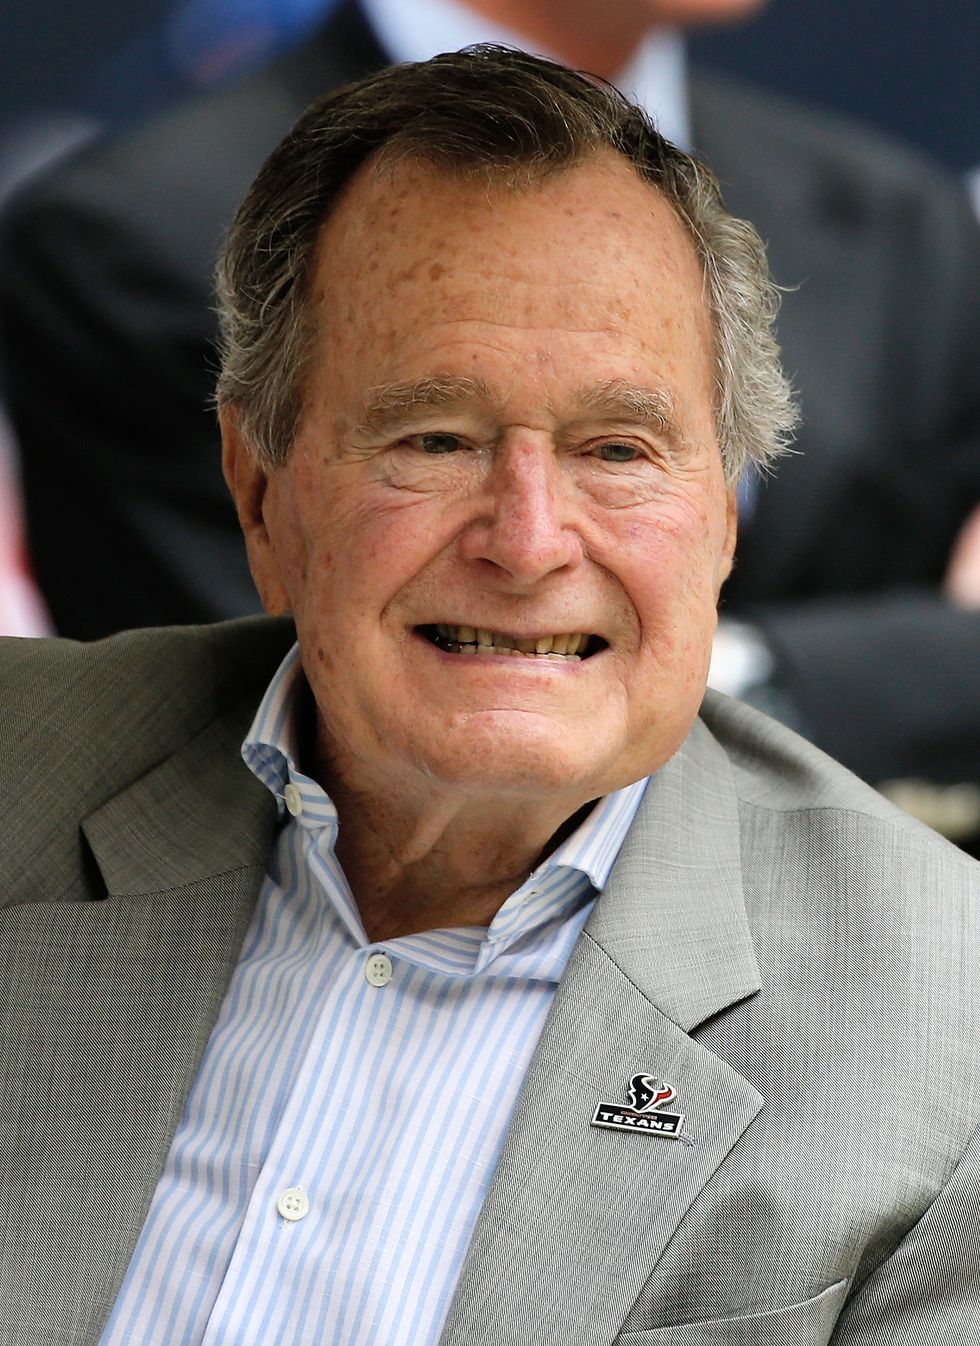 George W. H. Bush